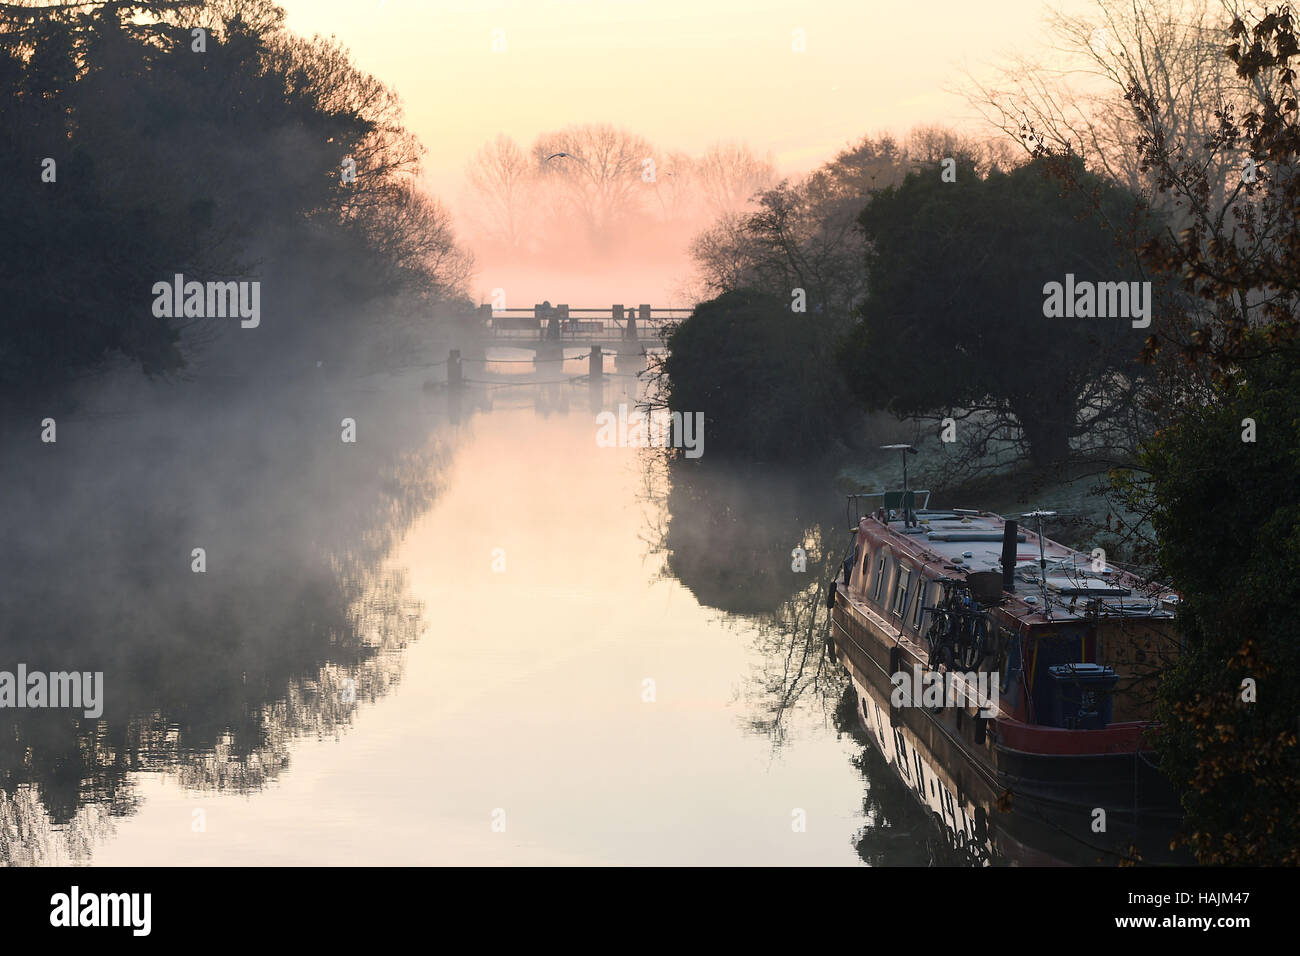 La nebbia e la nebbia circondano un canal boat a Godstow serratura in Oxfordshire, con la giornata di oggi segna la partenza ufficiale dei fenomeni meteorologici inverno come temperature di nuovo scesa al di sotto del congelamento di nuovo in ampie parti dell Inghilterra e del Galles. Foto Stock